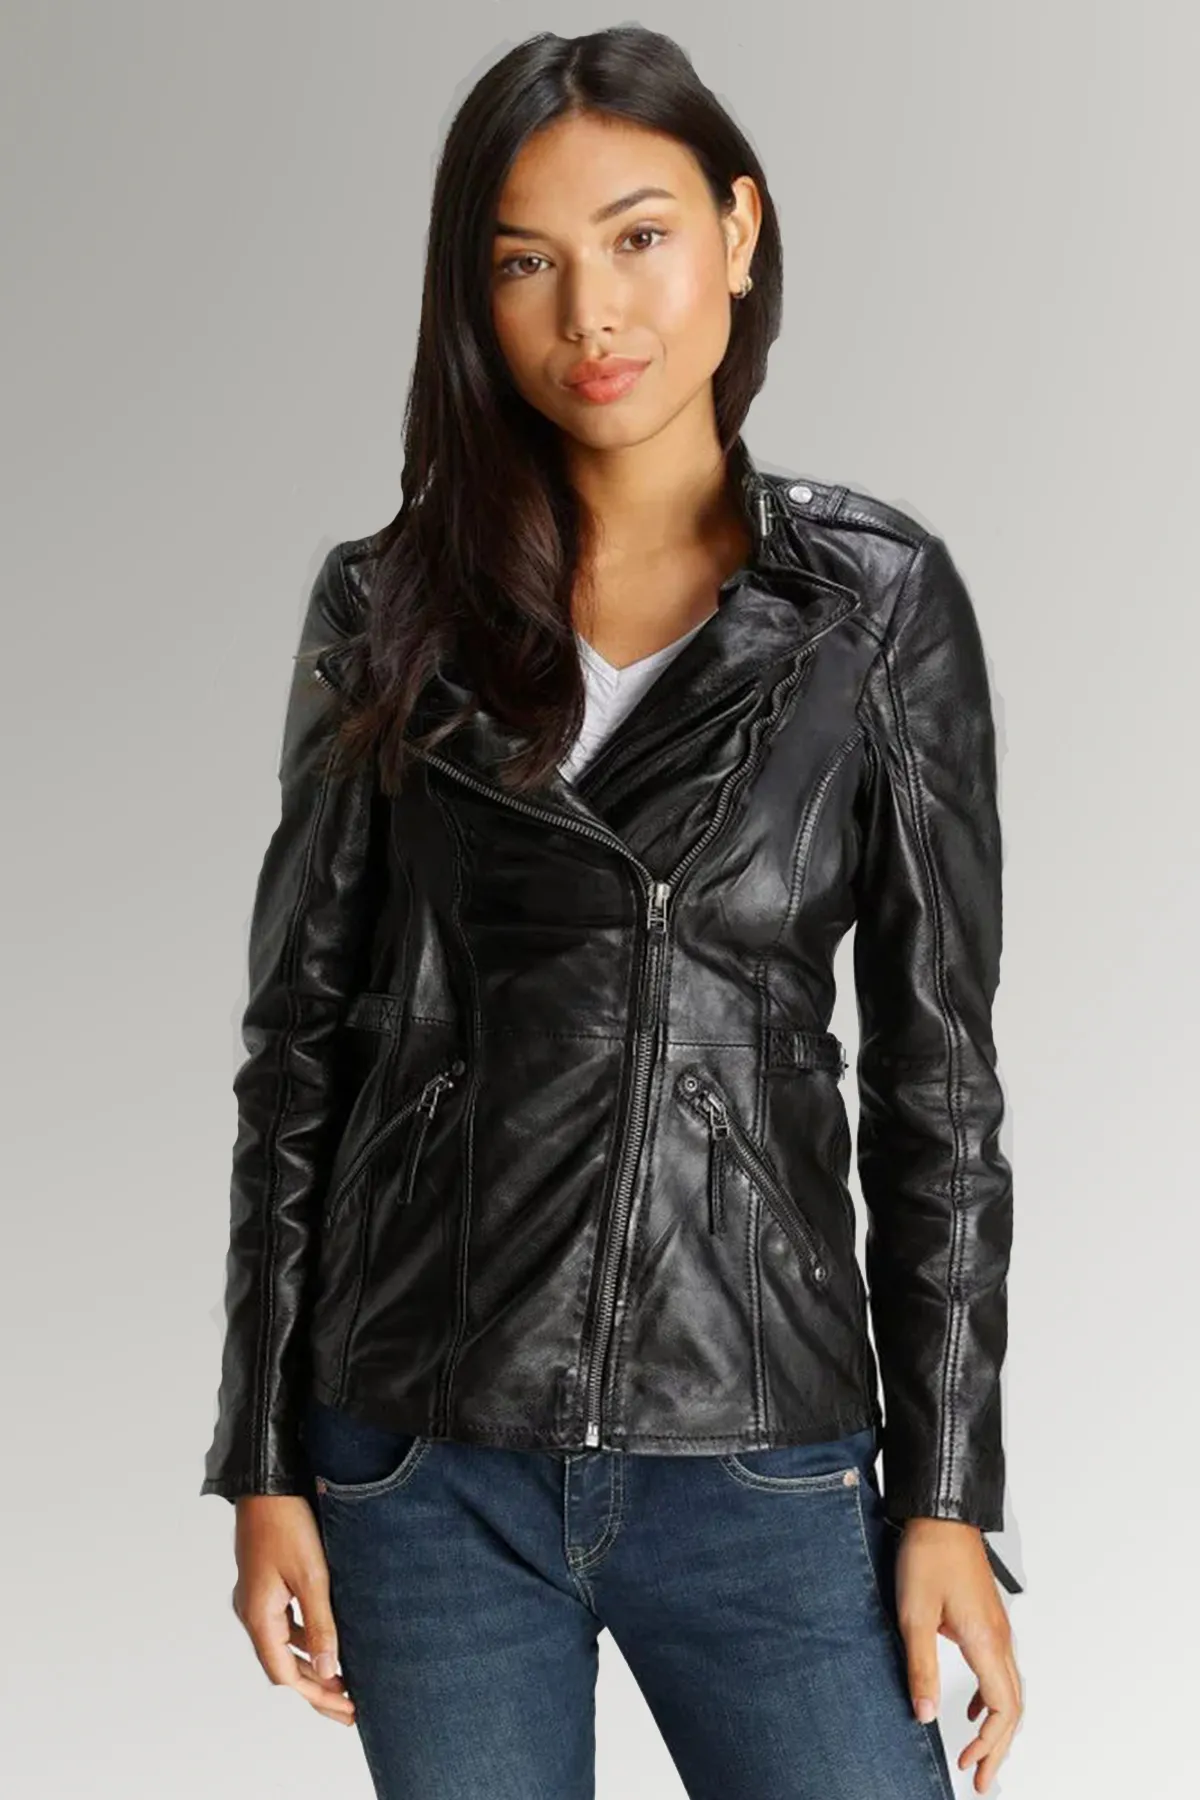 Biker Leather Jacket for Women's